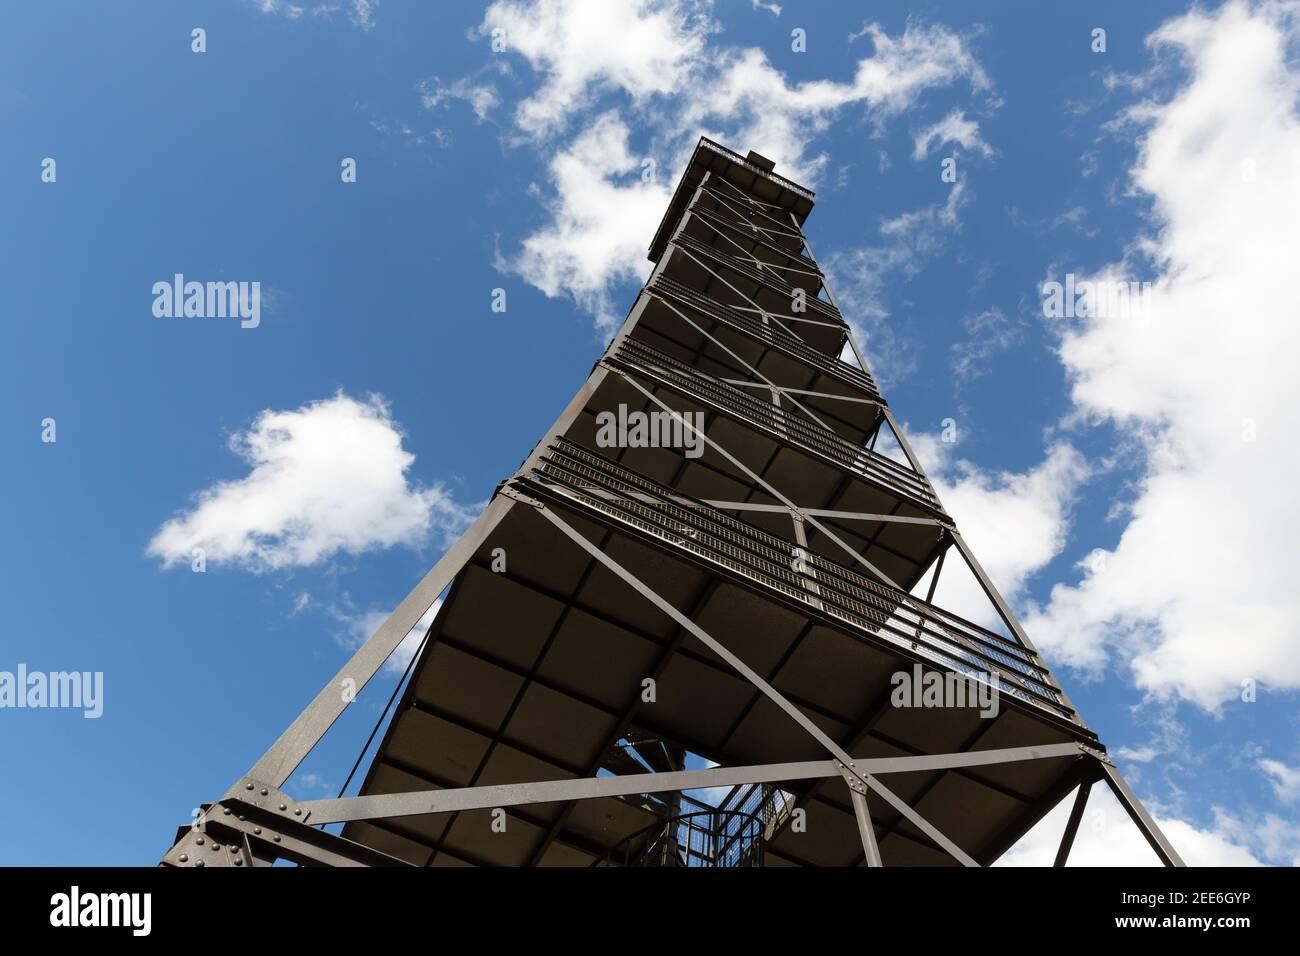 imponente torre mirador con barandilla de celosía y muchos pisos, cielo azul con nubes en un día soleado, fotografiado desde diagonalmente hasta la parte superior, lookou Foto de stock